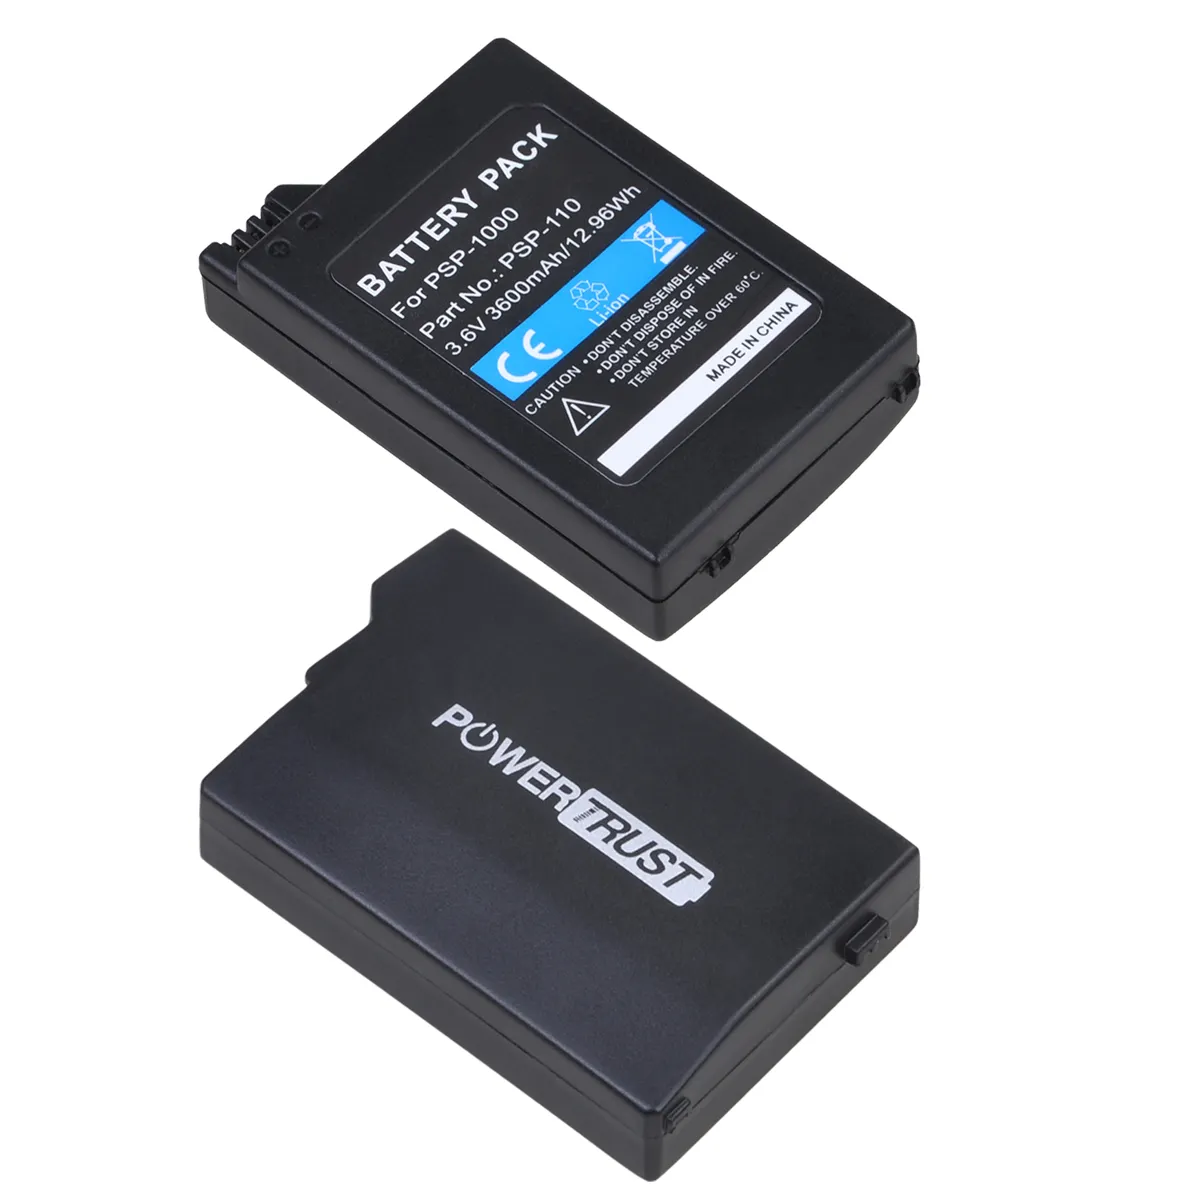 Powertrust 3600Mah Oplaadbare Batterij Voor Sony PSP1000, PSP110, Psp 1000 Gamepad Batterijen Voor Playstation Portable Controller